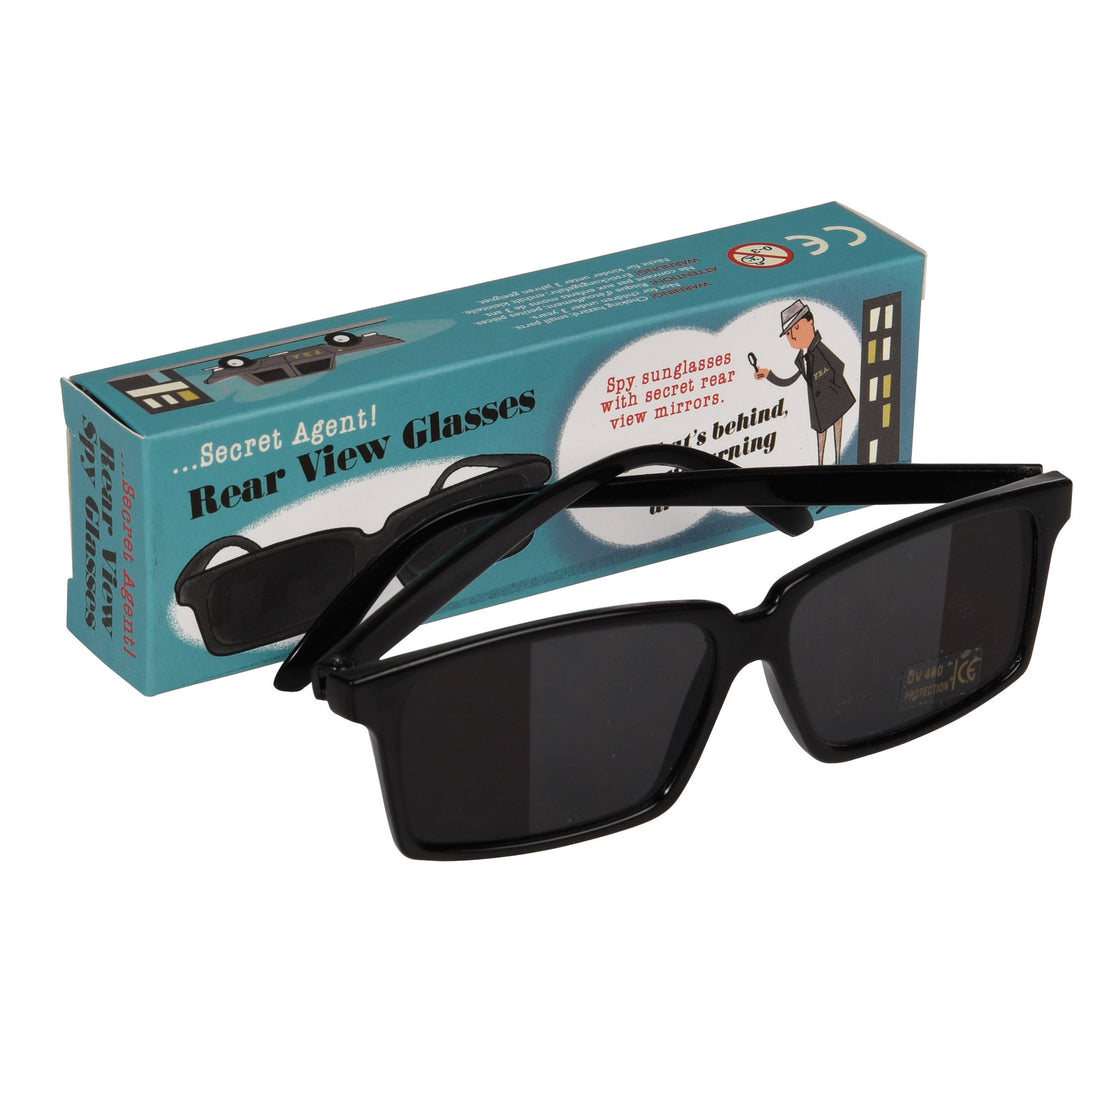 rex-secret-agent-rear-view-spy-glasses- (1)